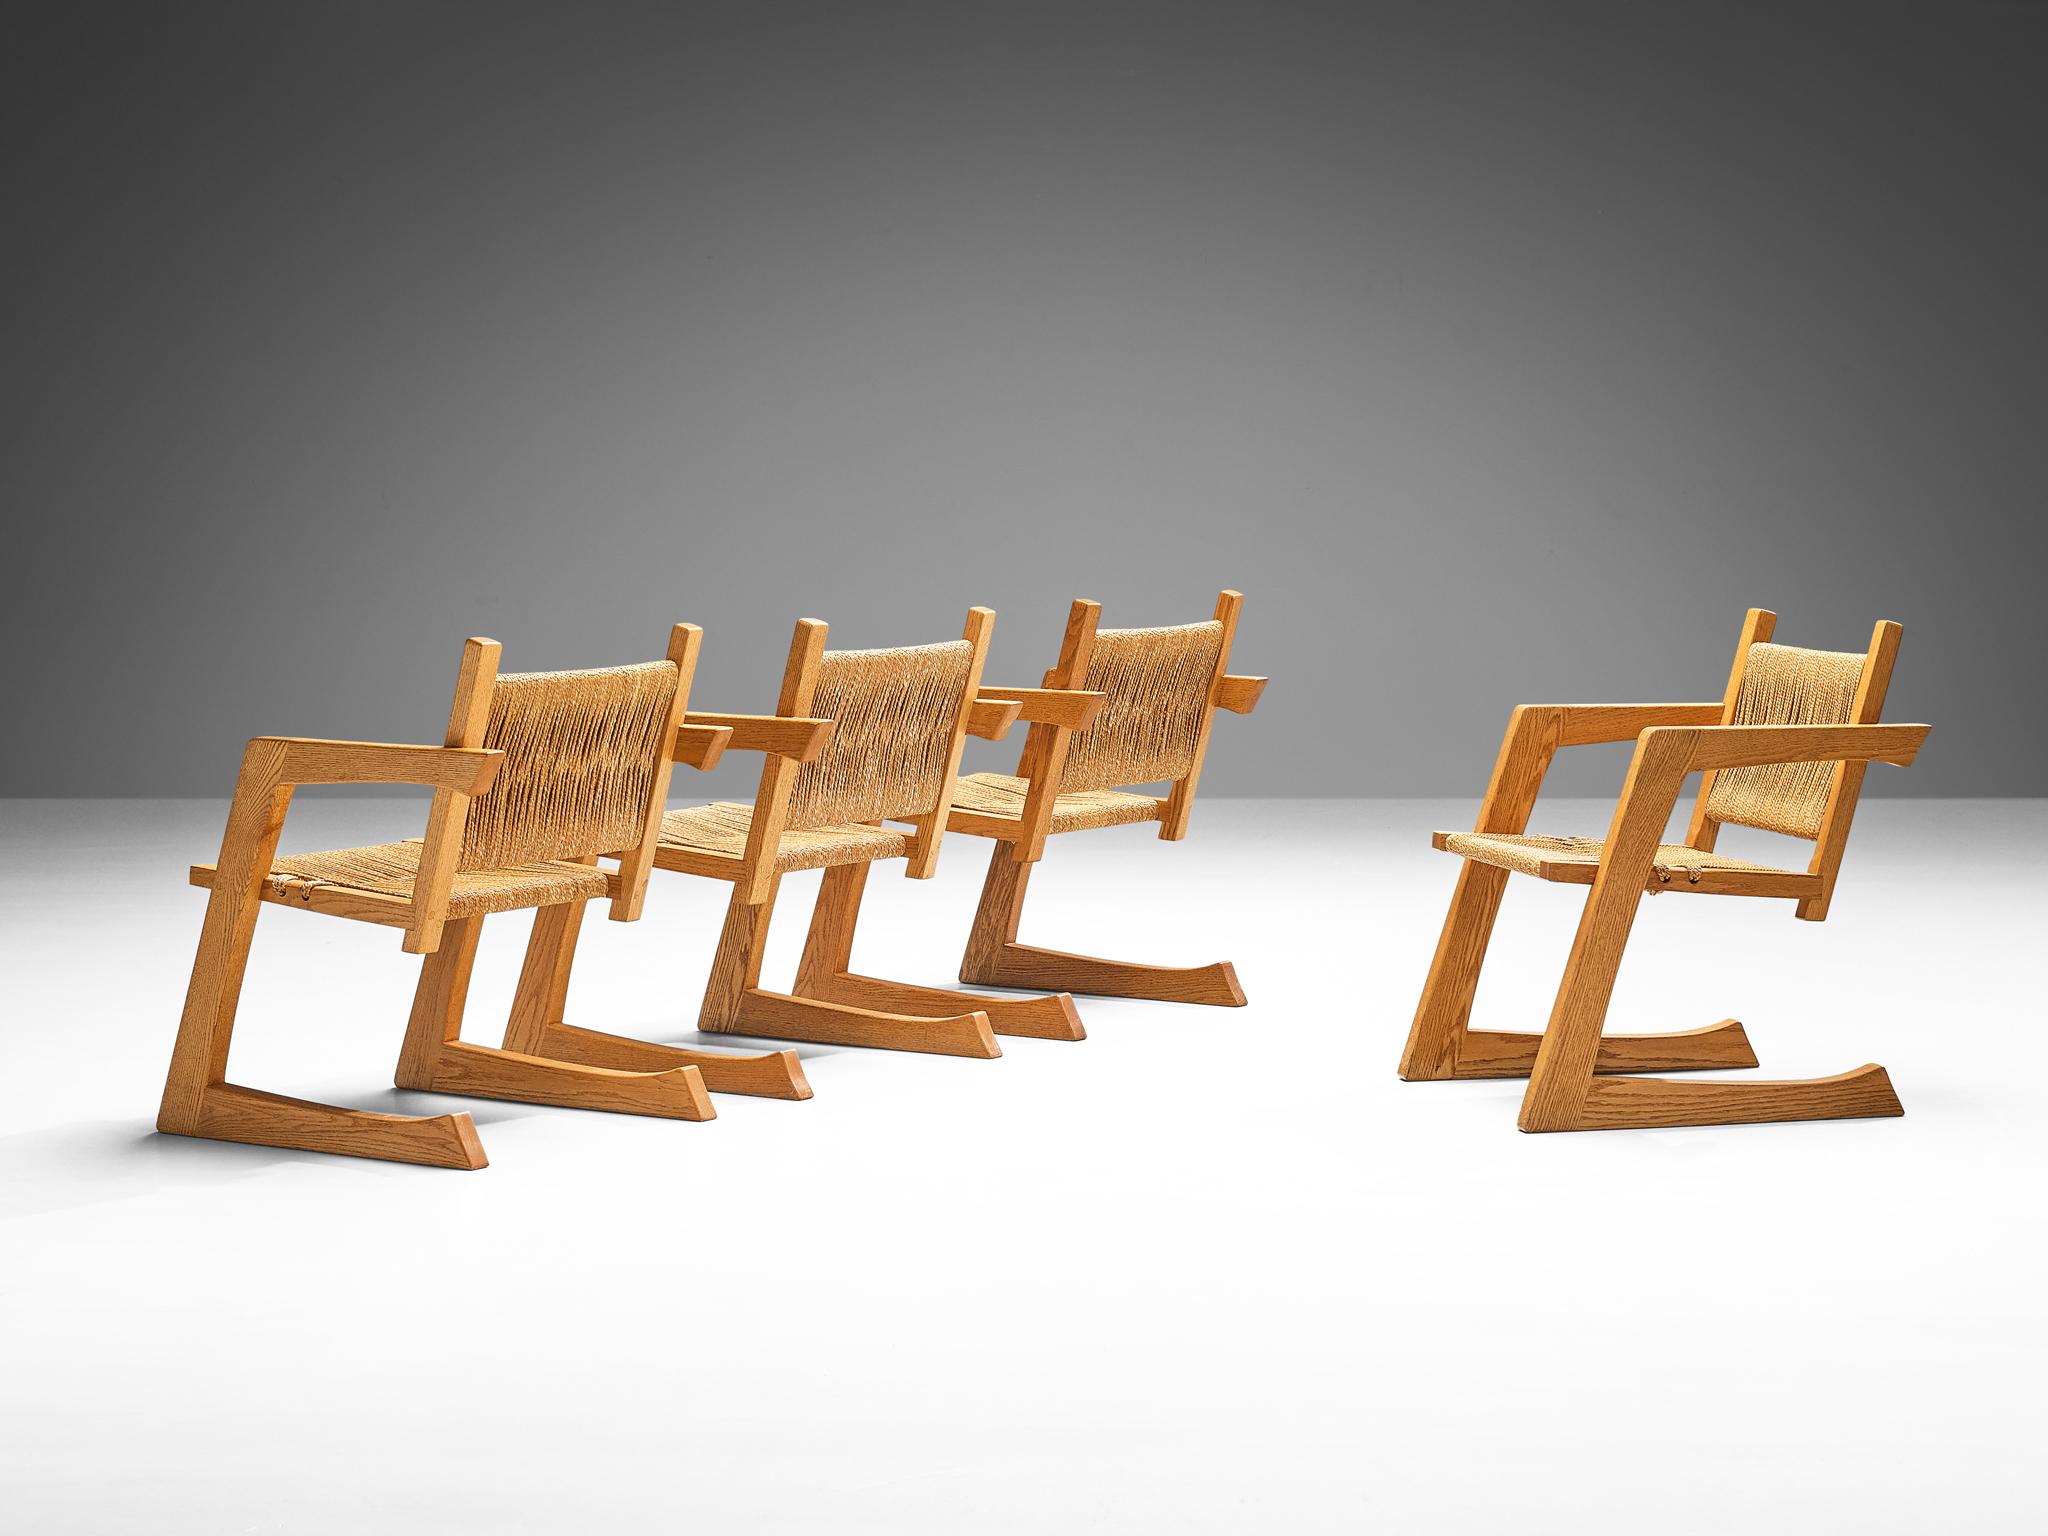 Gino Russo, ensemble de quatre chaises de salle à manger, chêne, gazon tressé, États-Unis. circa 1984

Cet ensemble de fauteuils est conçu par le designer de meubles italo-américain Gino Russo. Le cadre de ce meuble est en chêne et se caractérise